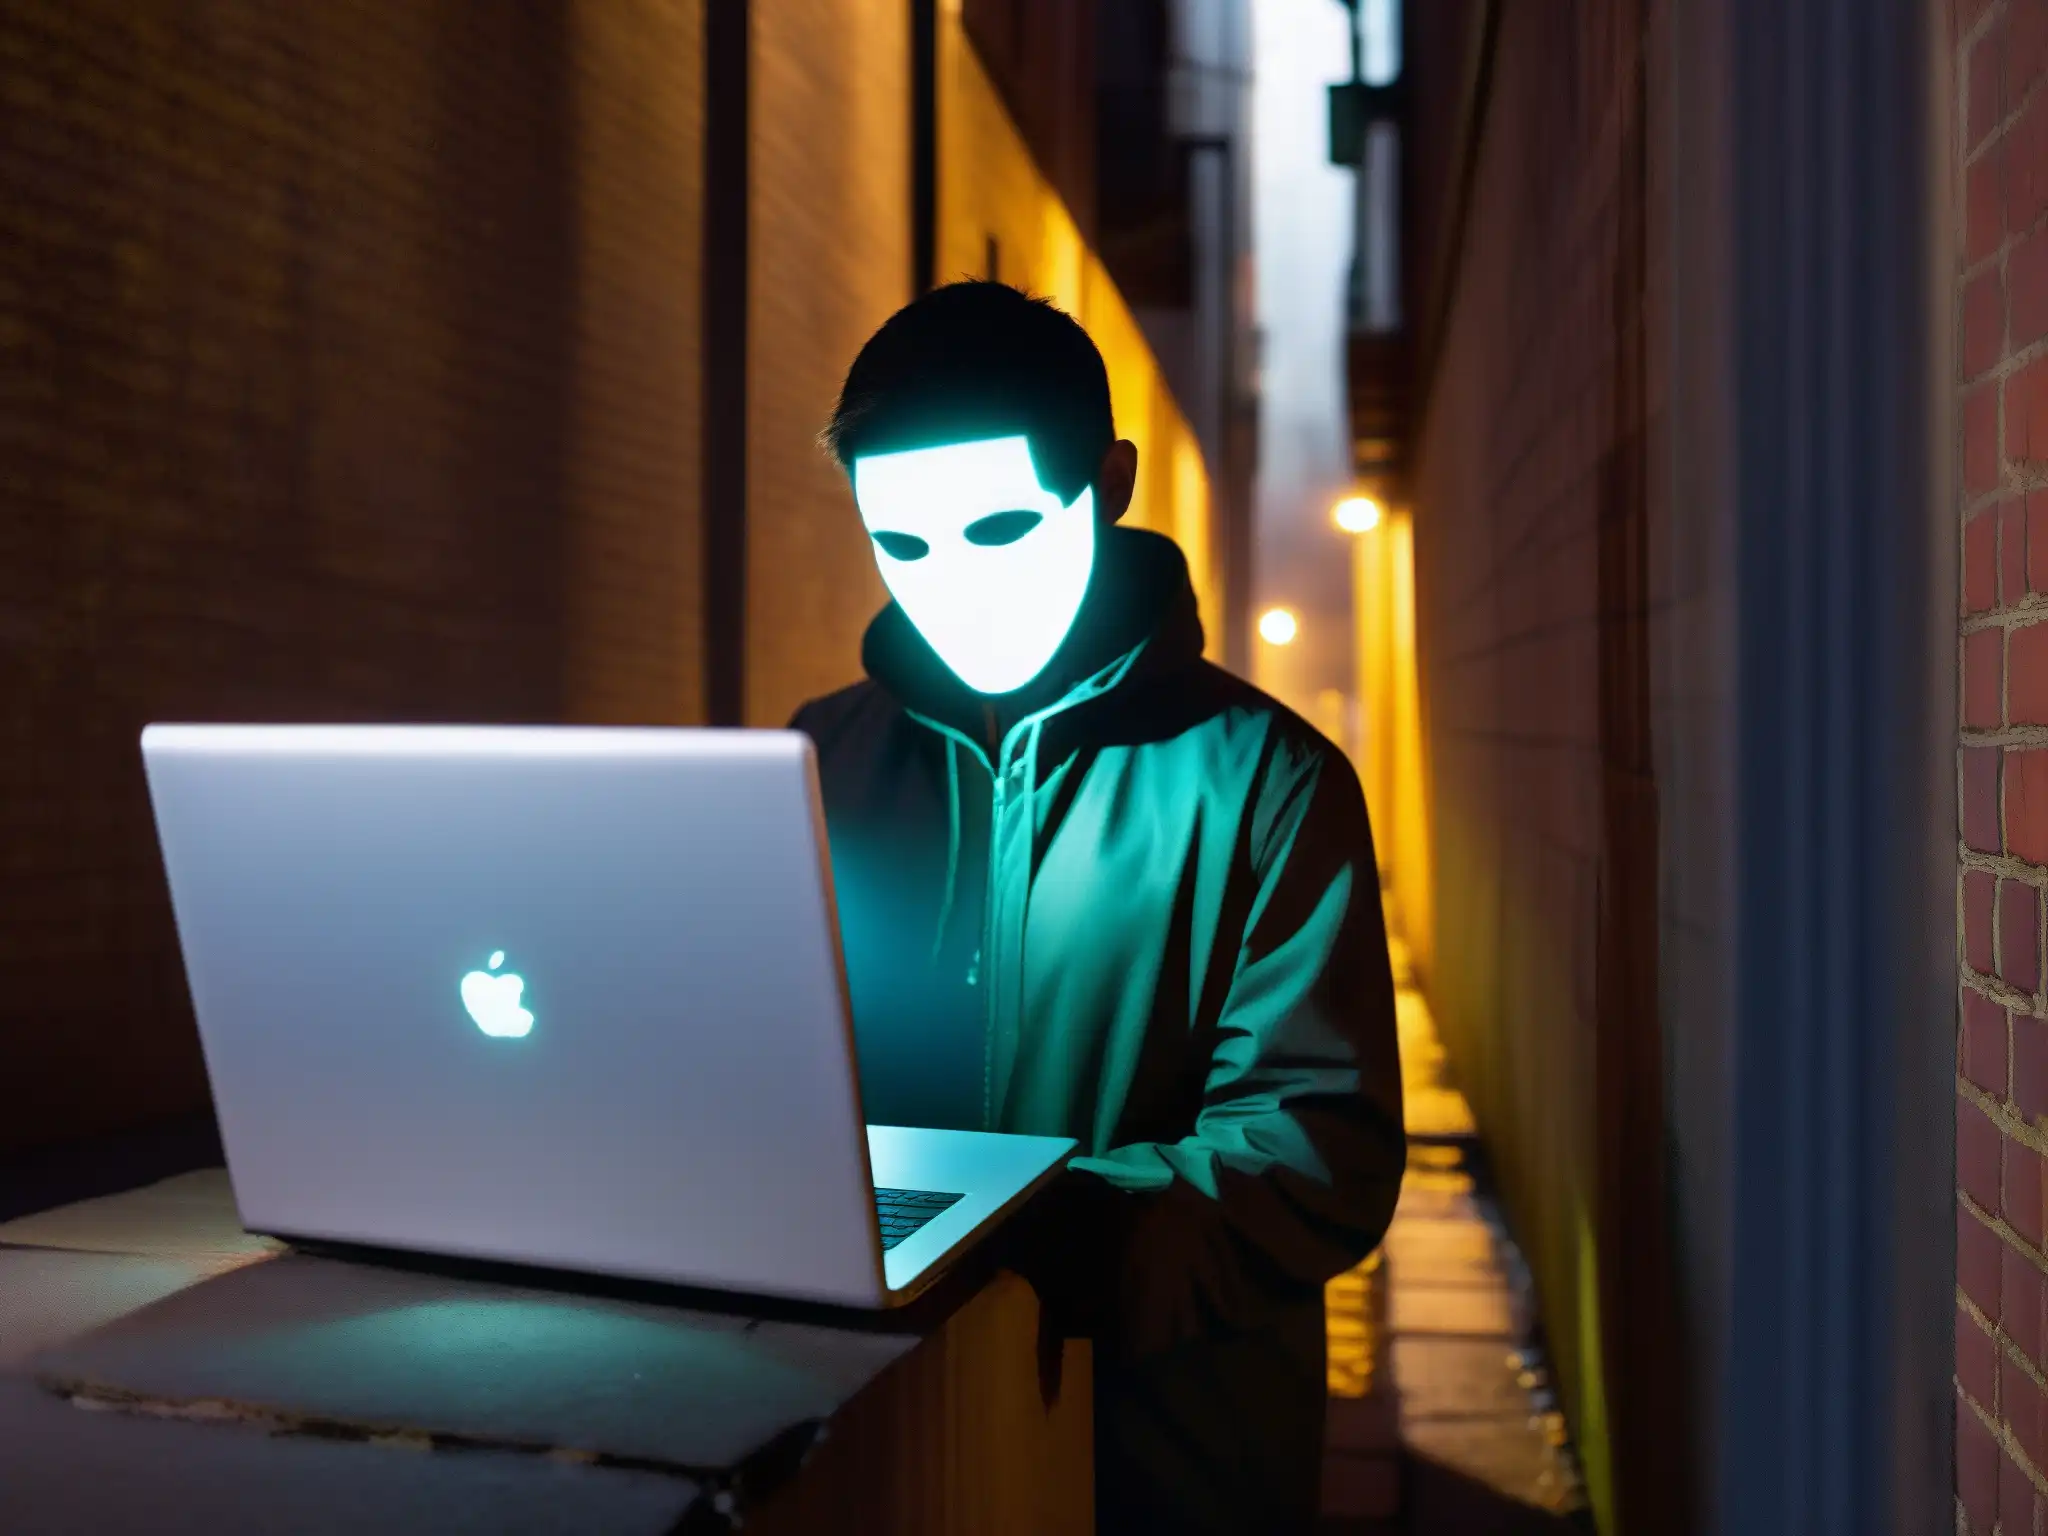 Misteriosa figura en callejón urbano, con pantalla de laptop reflejando su rostro y atmósfera de mitos y leyendas urbanas digitales